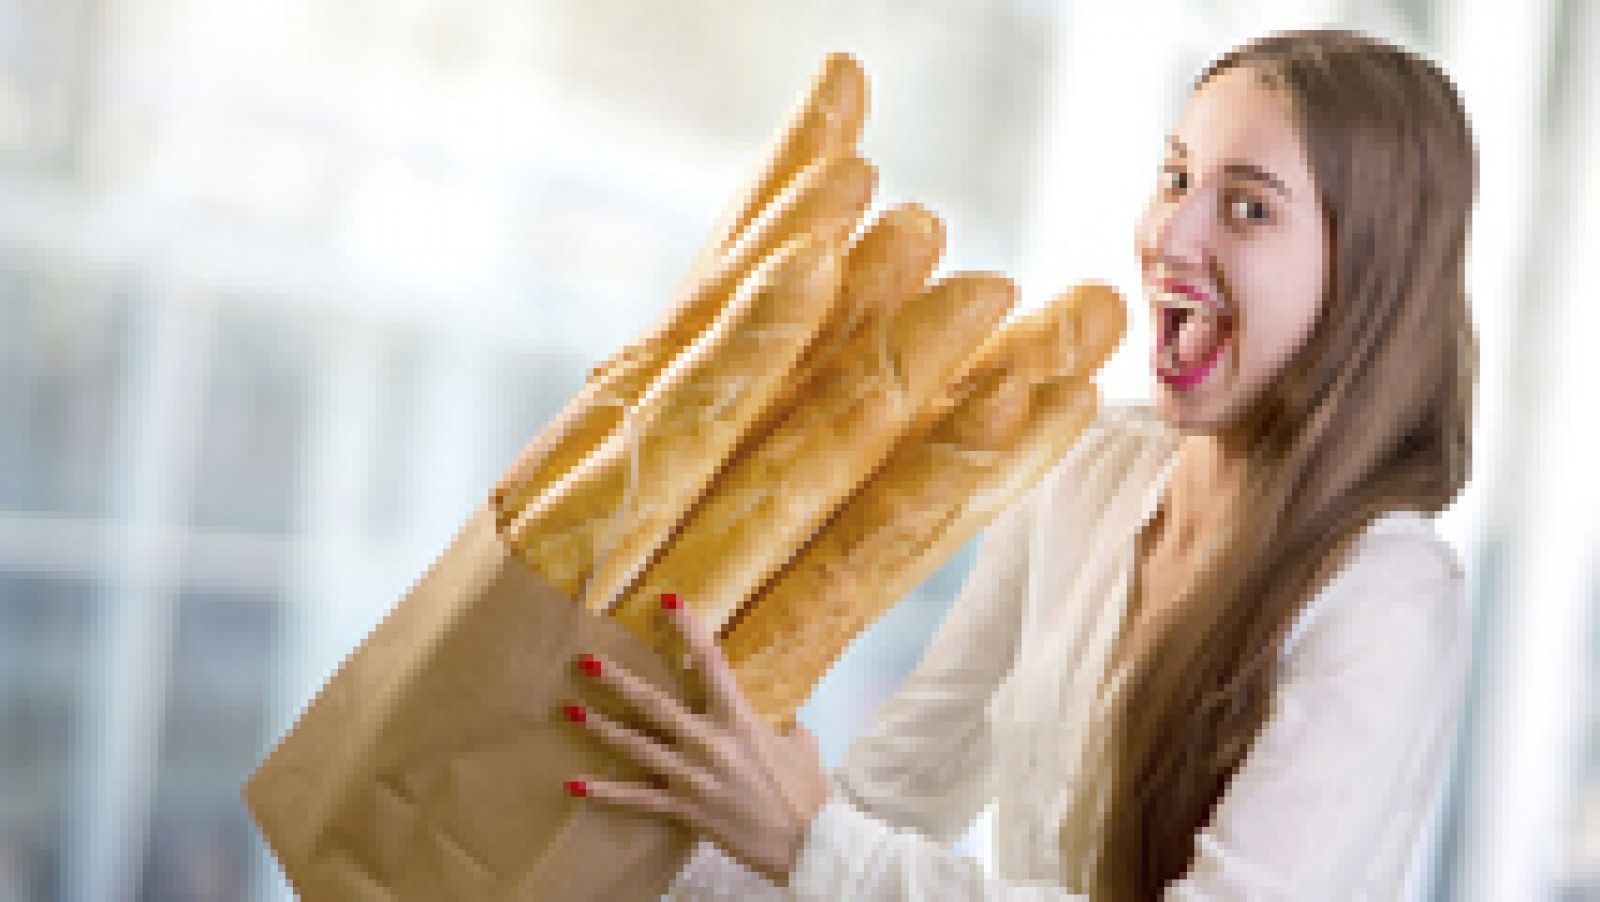 Mitos sobre alimentación: El pan engorda